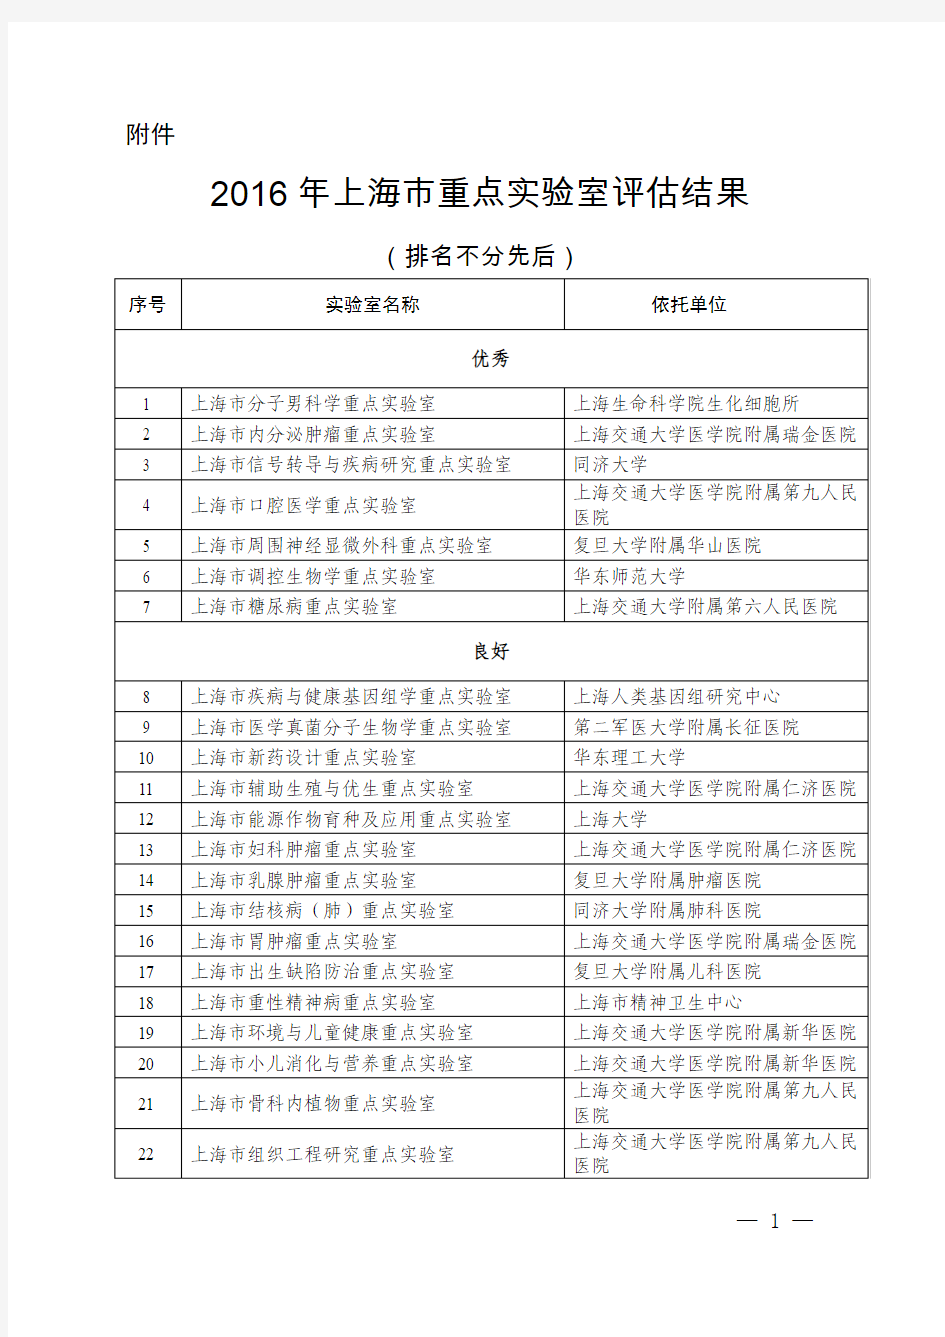 2016年上海市重点实验室评估结果